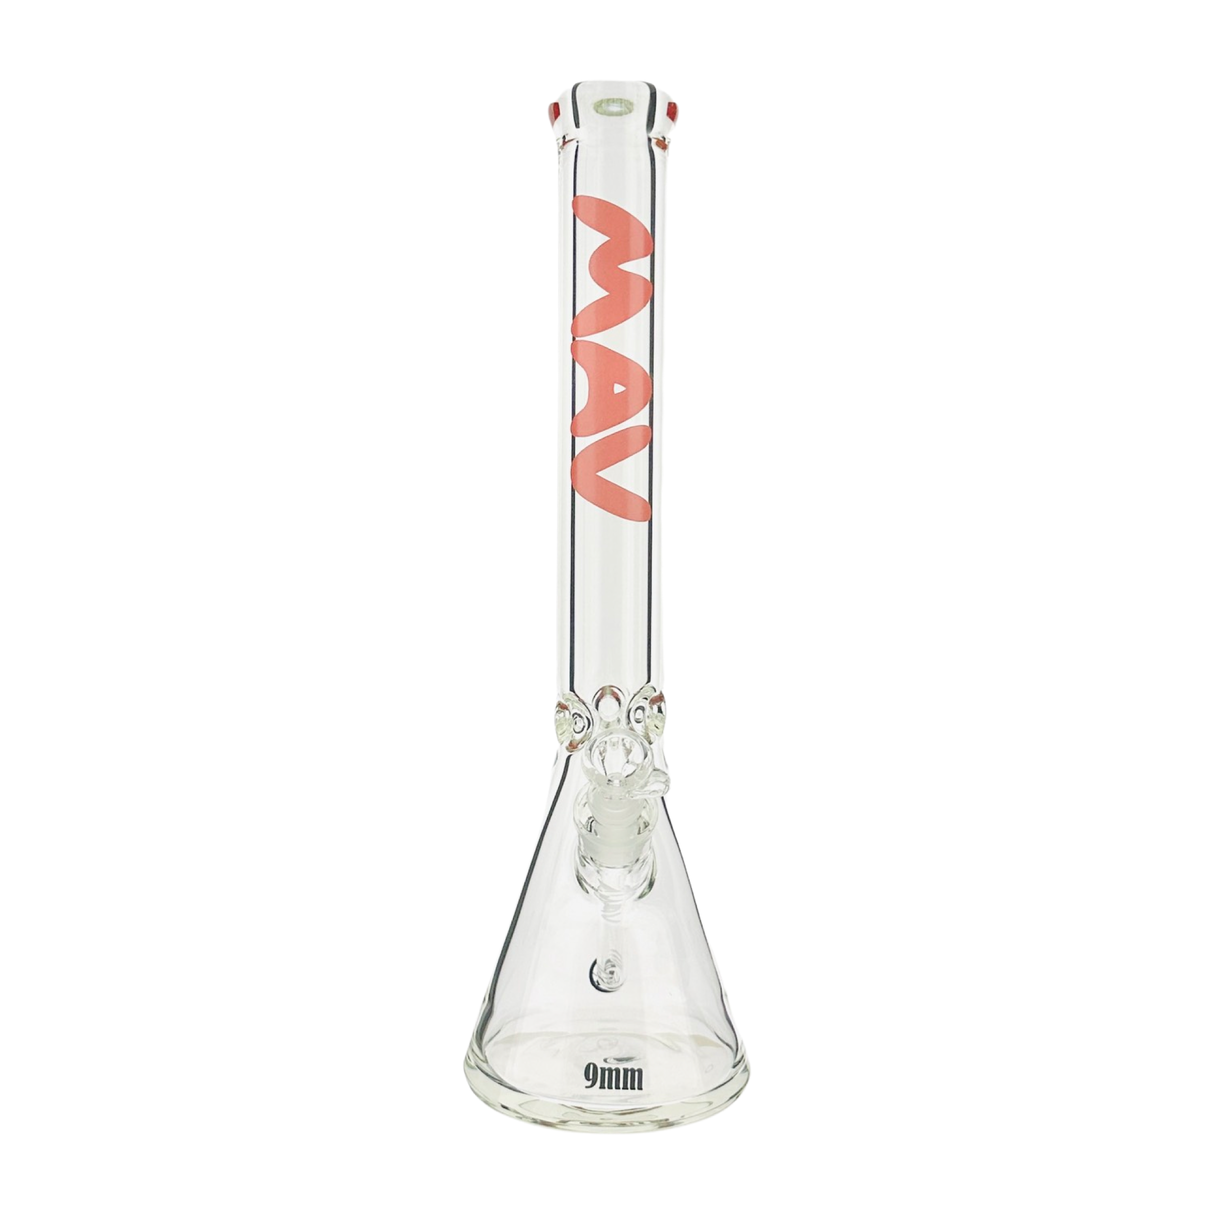 MAV Glass 18" x 9mm Clear Beaker Bong Front View on White Background